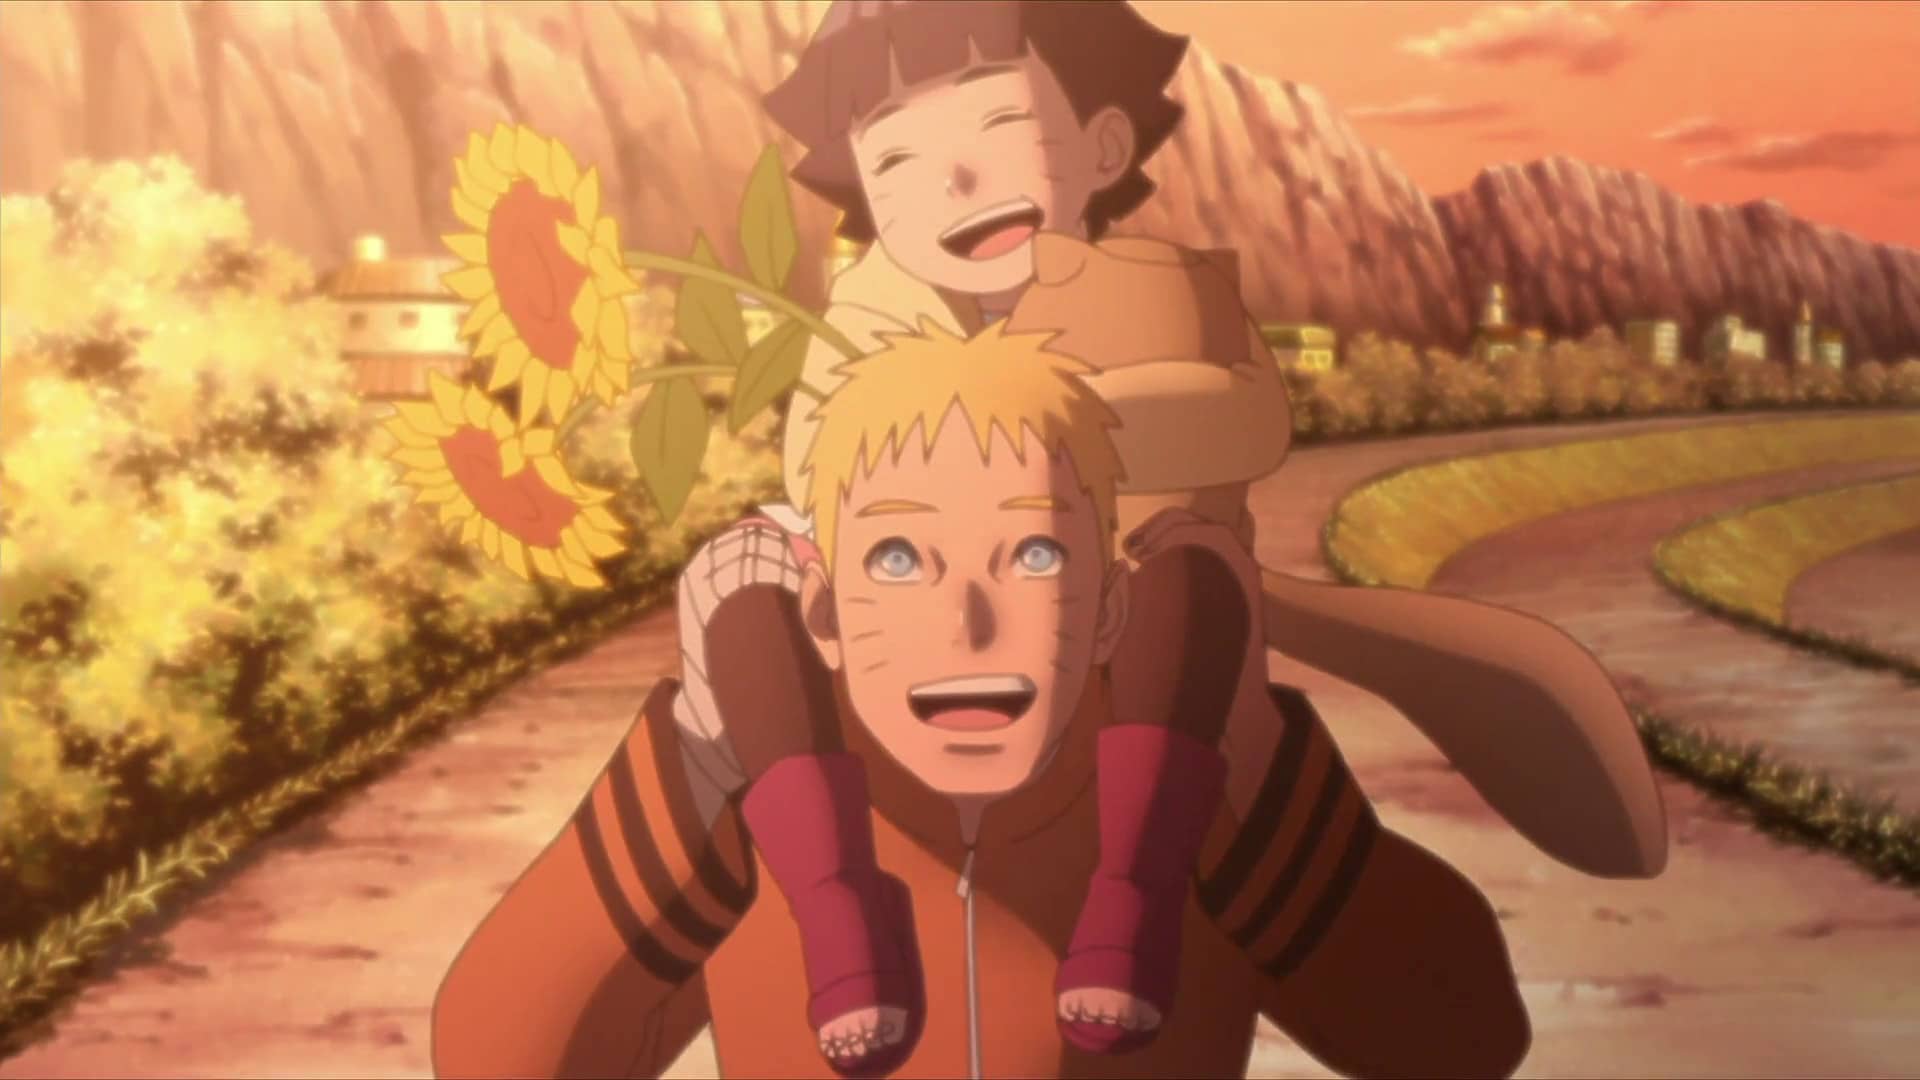 Assistir todos os episodios de Boruto: Naruto Next Generations online,  Assistir Boruto episódio 155: Assistir Boruto: Naruto Next Generations -  Episódio 32